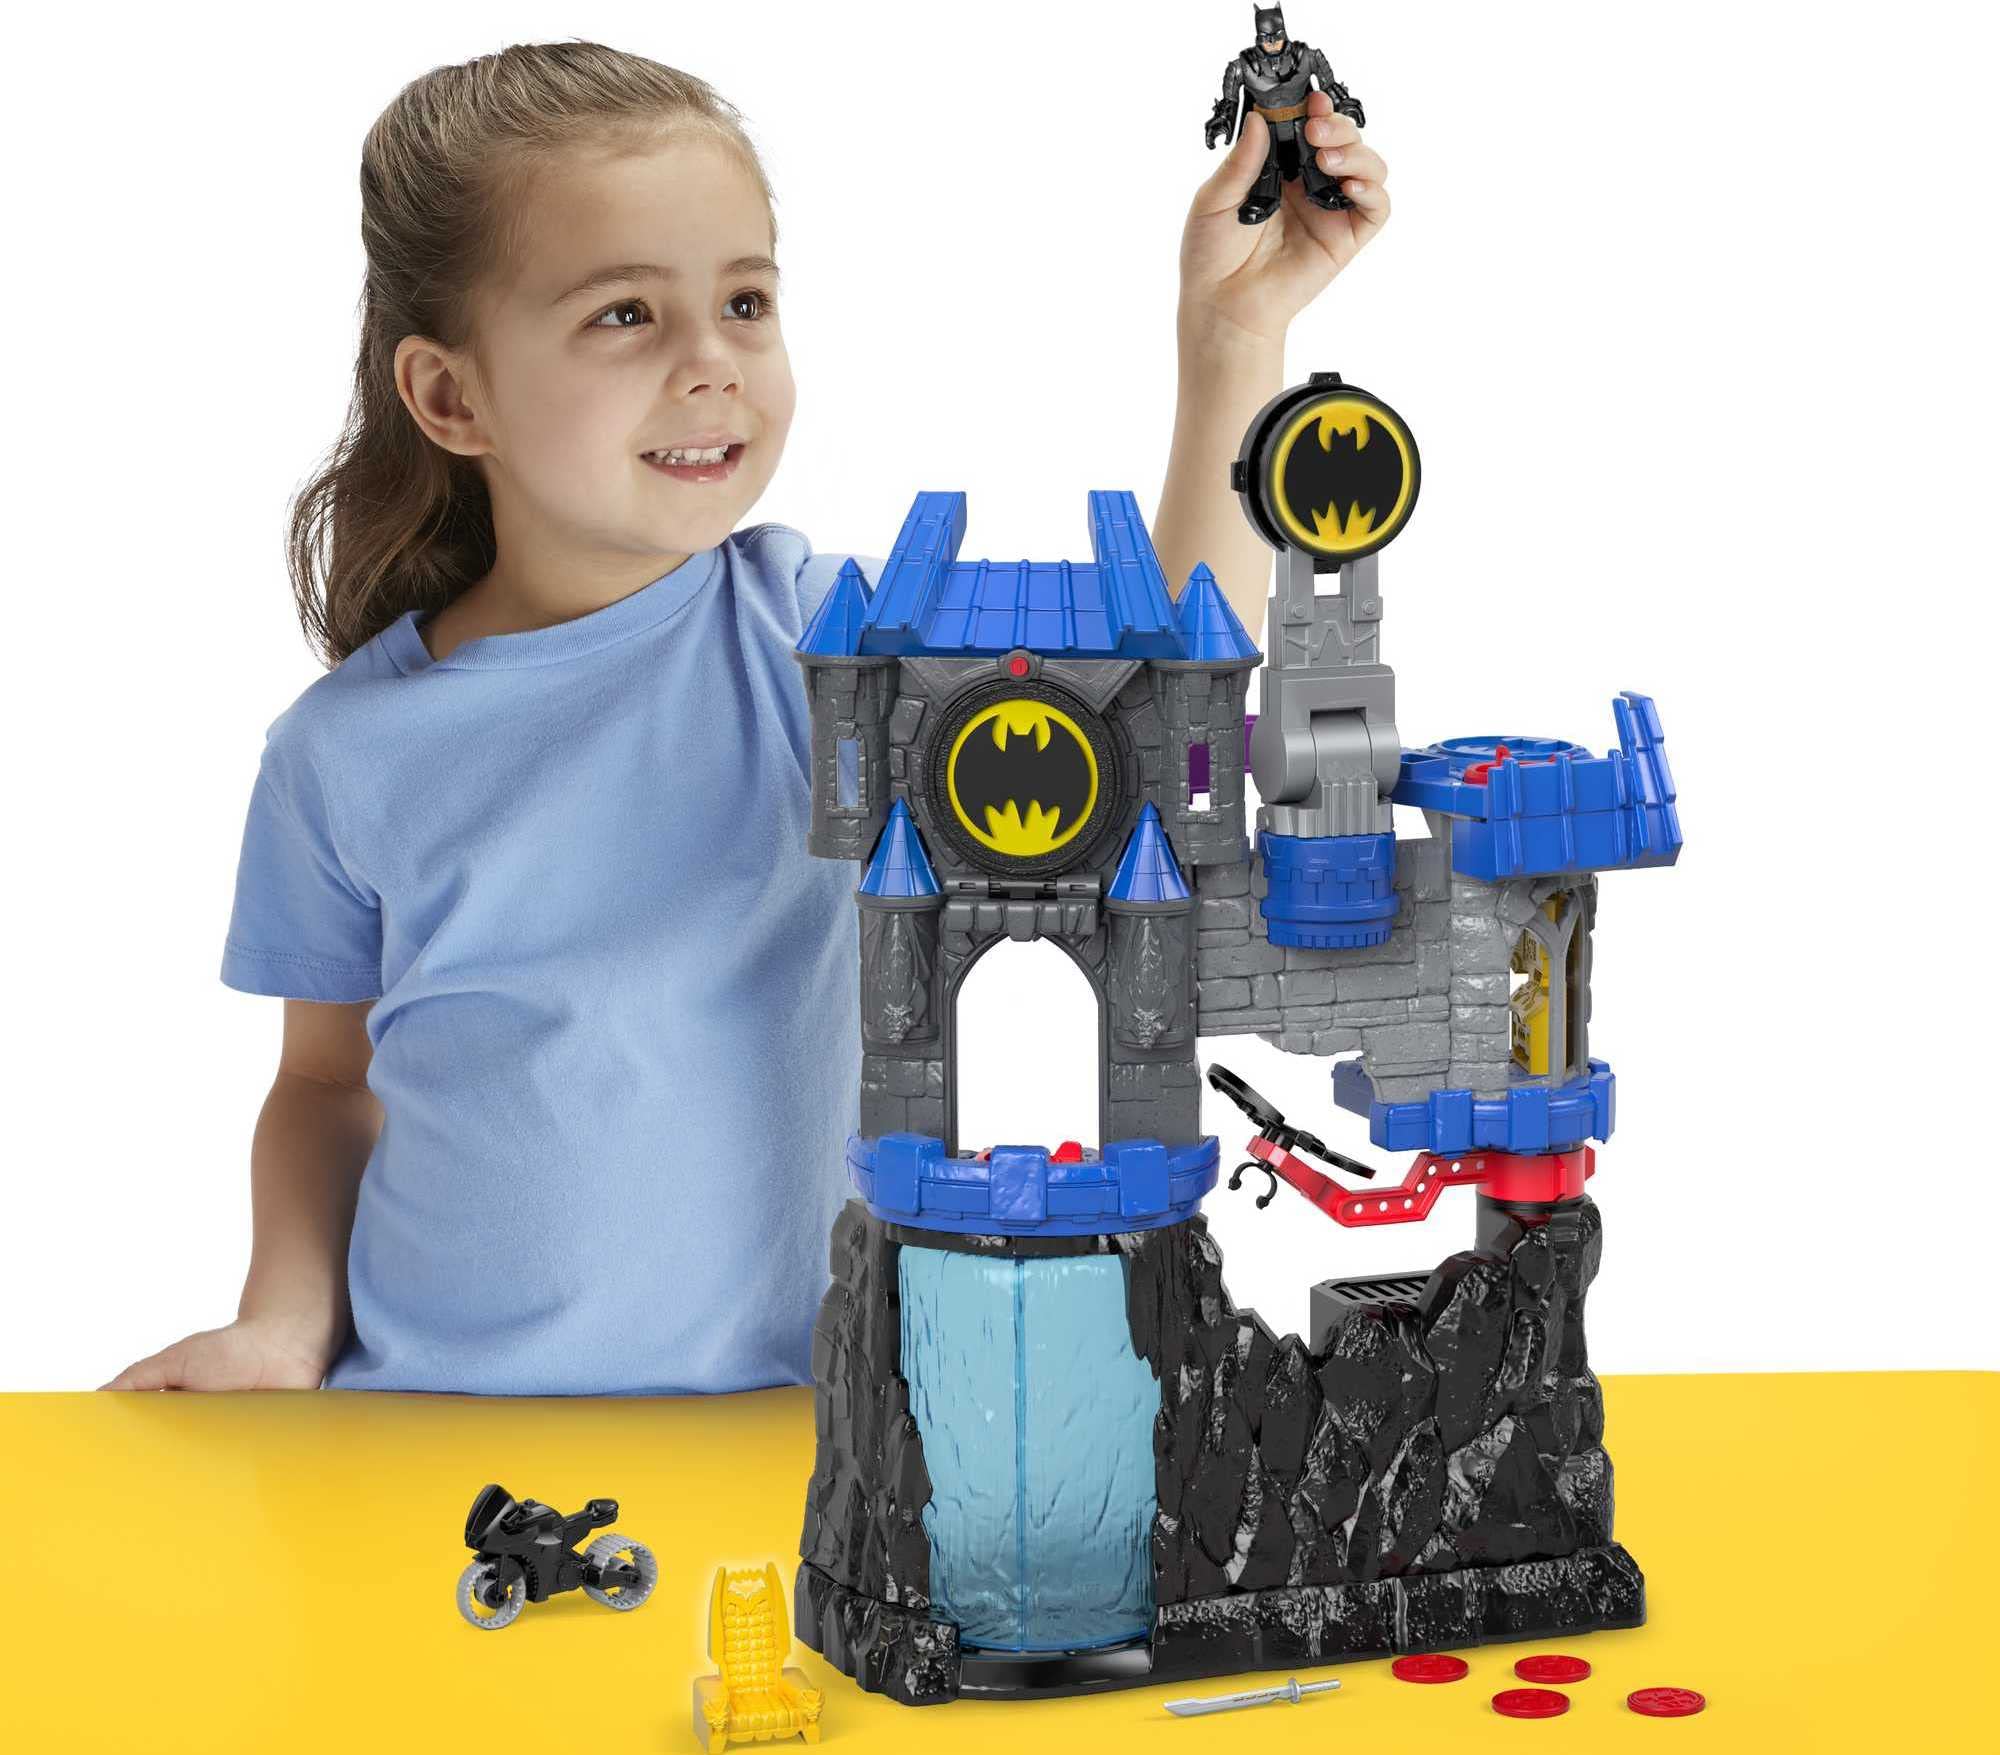 Imaginext DC Super Friends Batman Toy, Wayne Manor Batcave Playset with Batman Figure & Accessories (Amazon Exclusive)